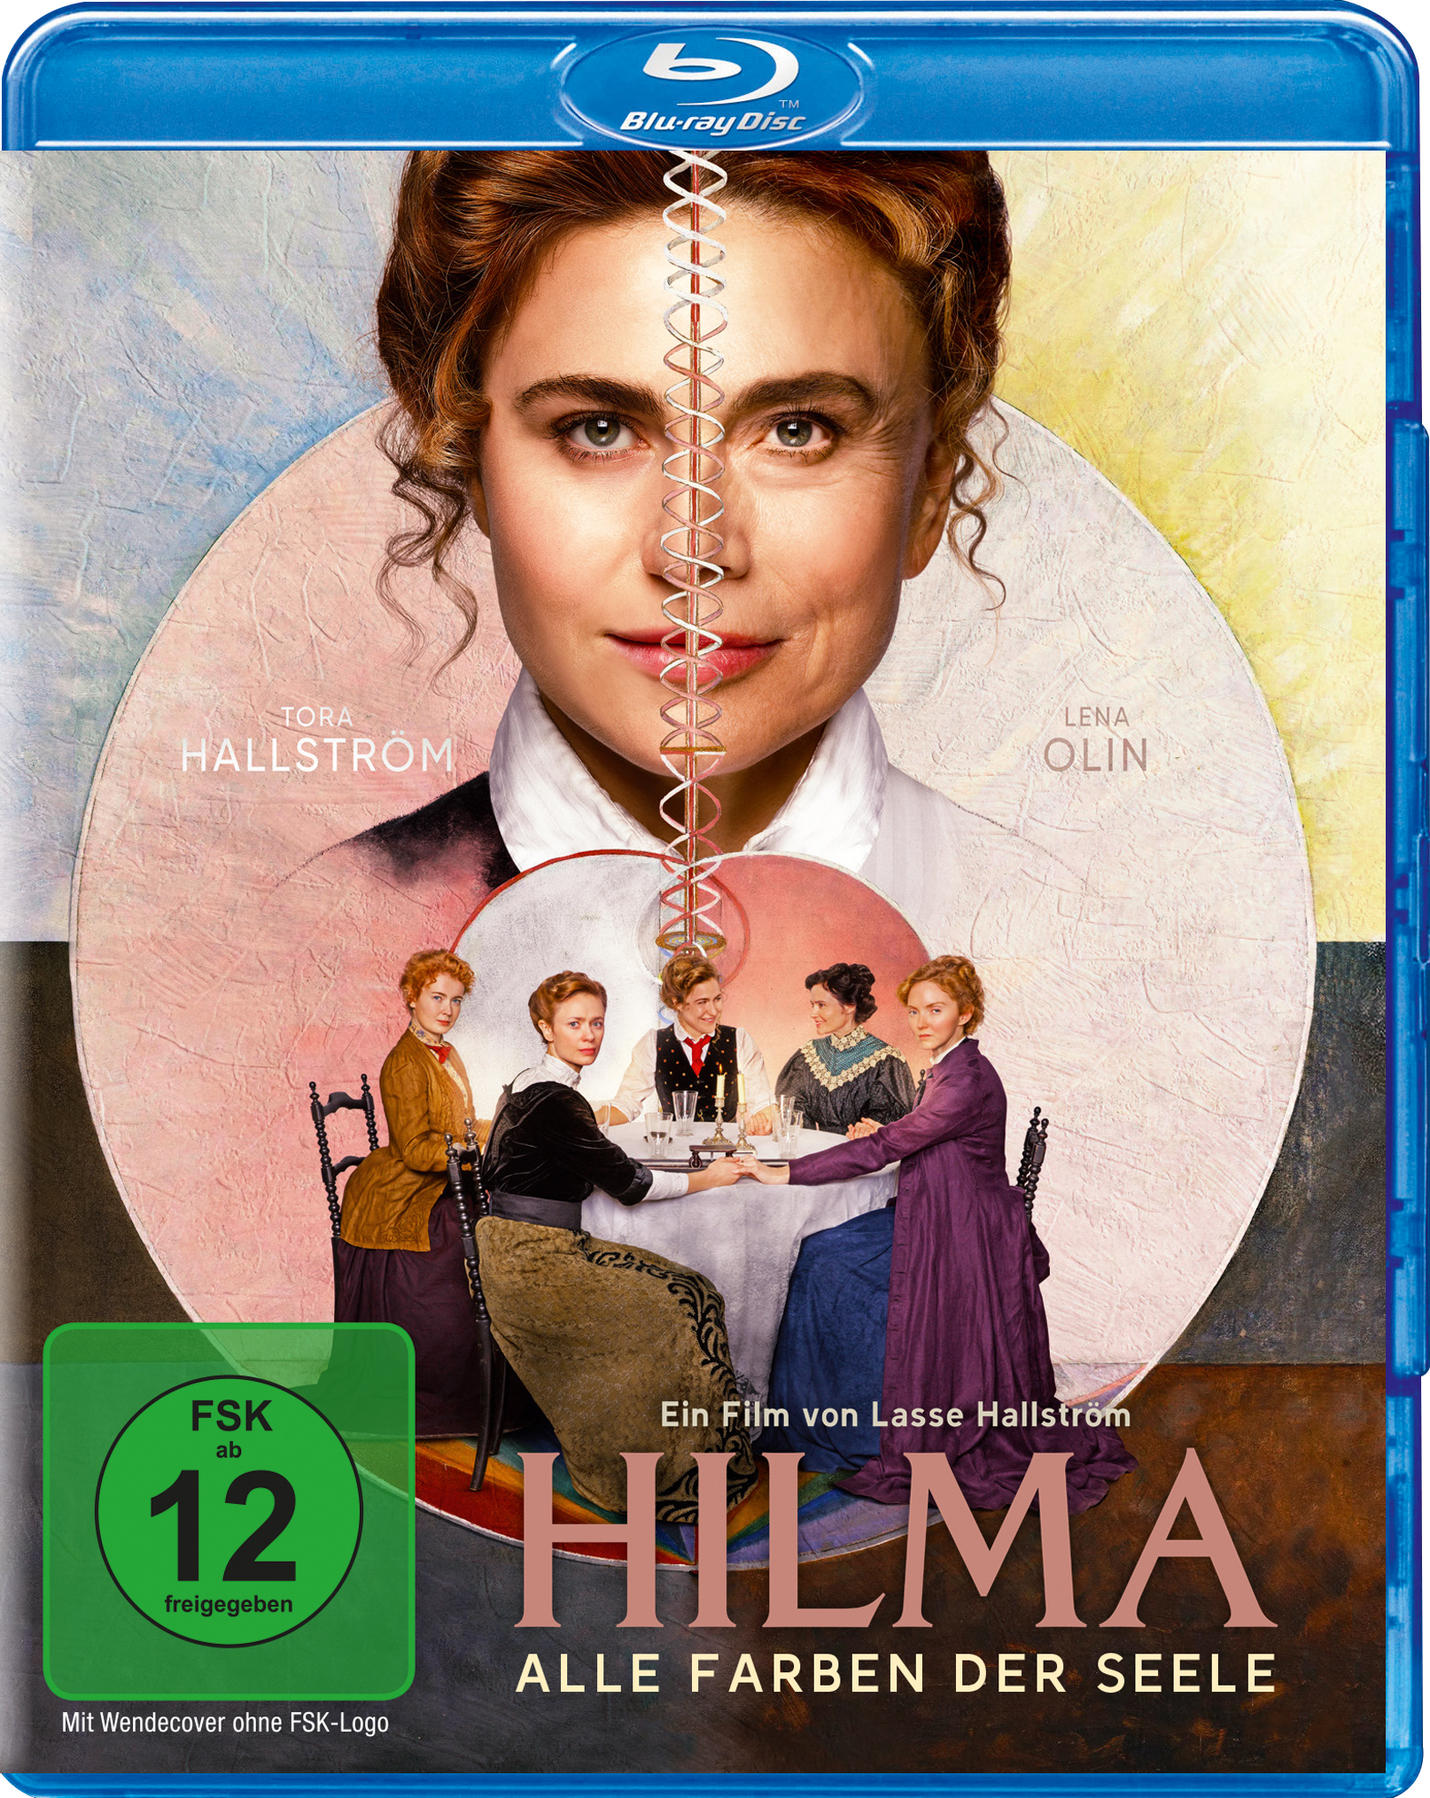 Farben - der Blu-ray Seele Hilma Alle